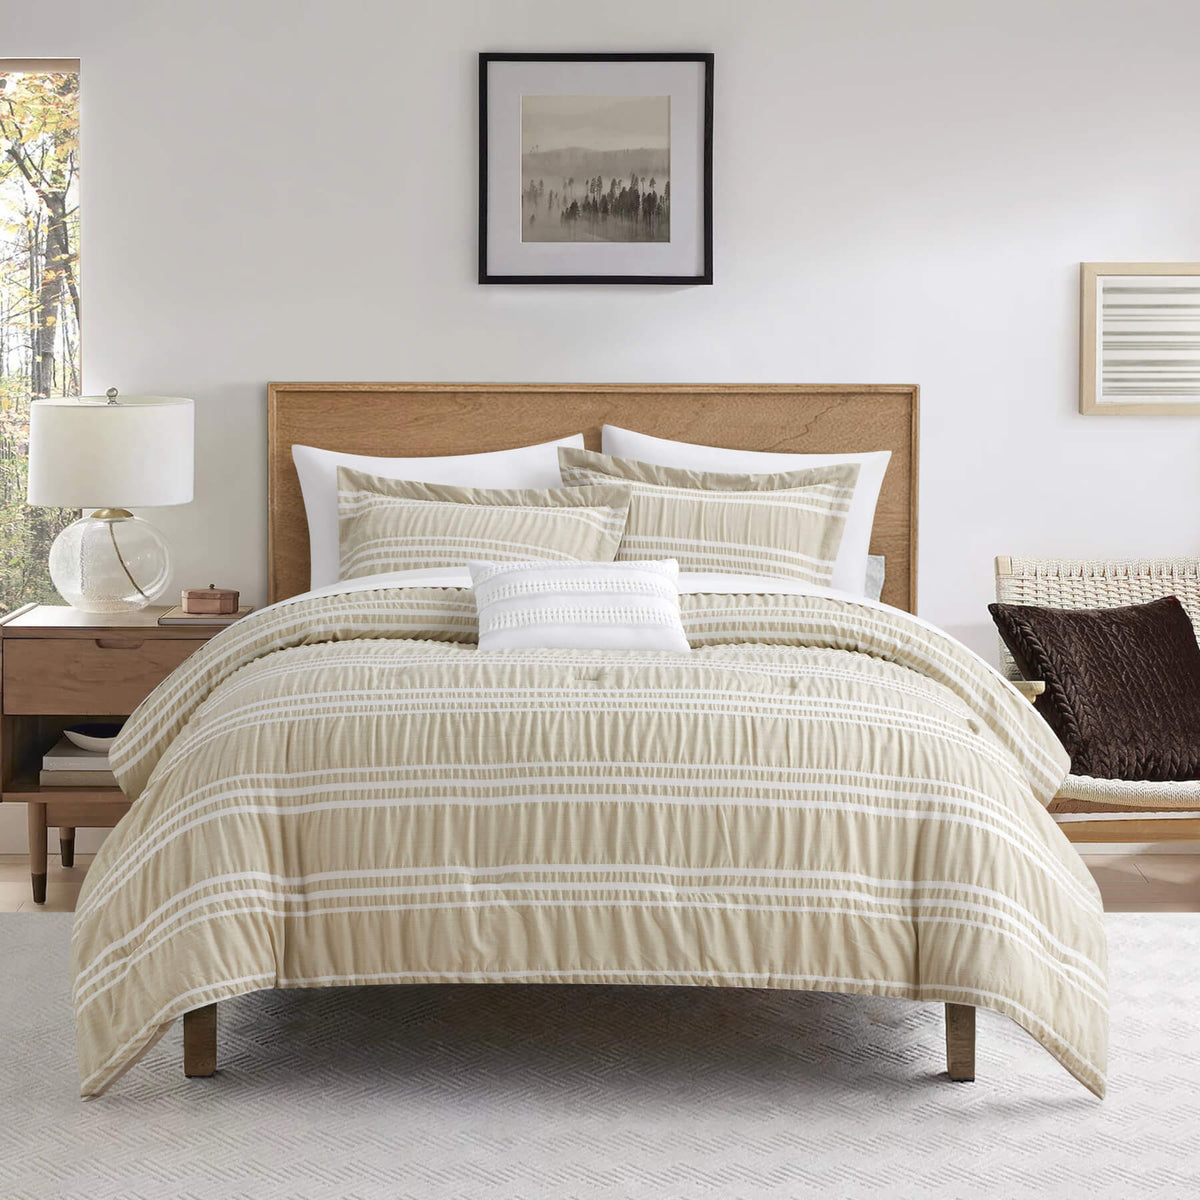 BEDSURE Full/Queen 8-Piece Comforter Set, Stripes Seersucker